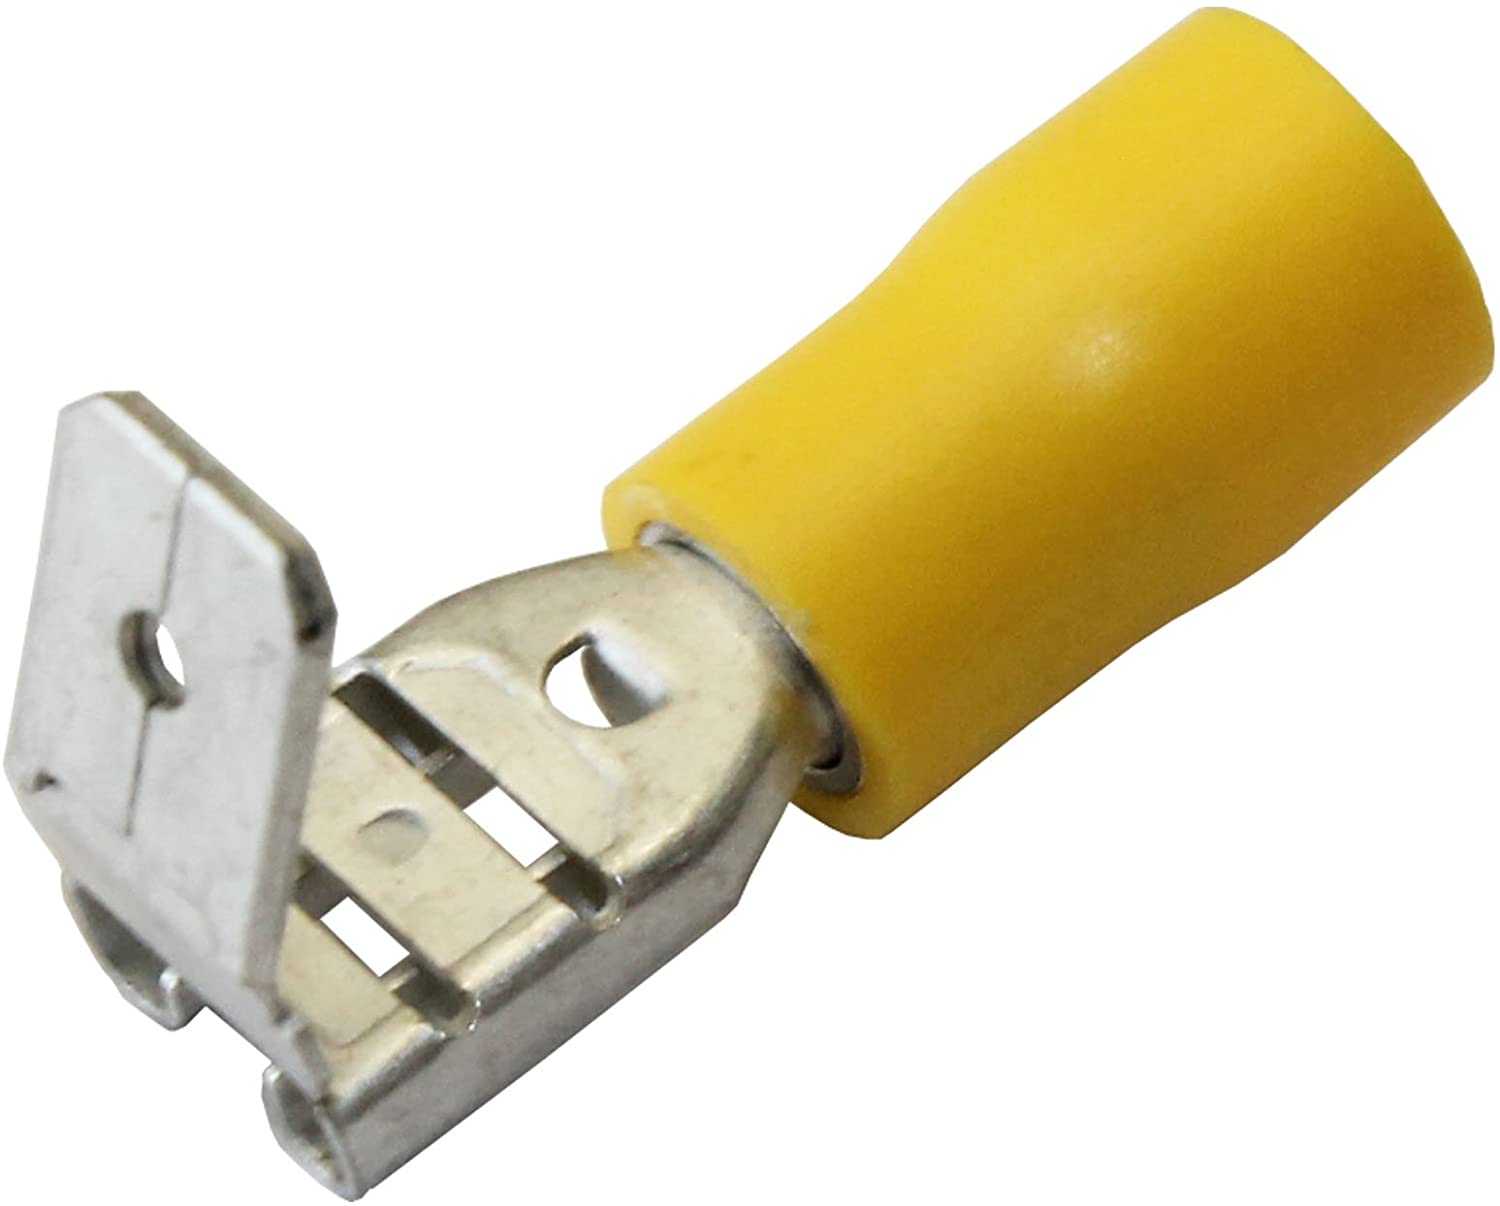 Bornes à fourche jaune Piggy Back 6.3 mm / Paquet de 100 - Connecteurs électriques - spo-cs-disabled - spo-default - spo-dis